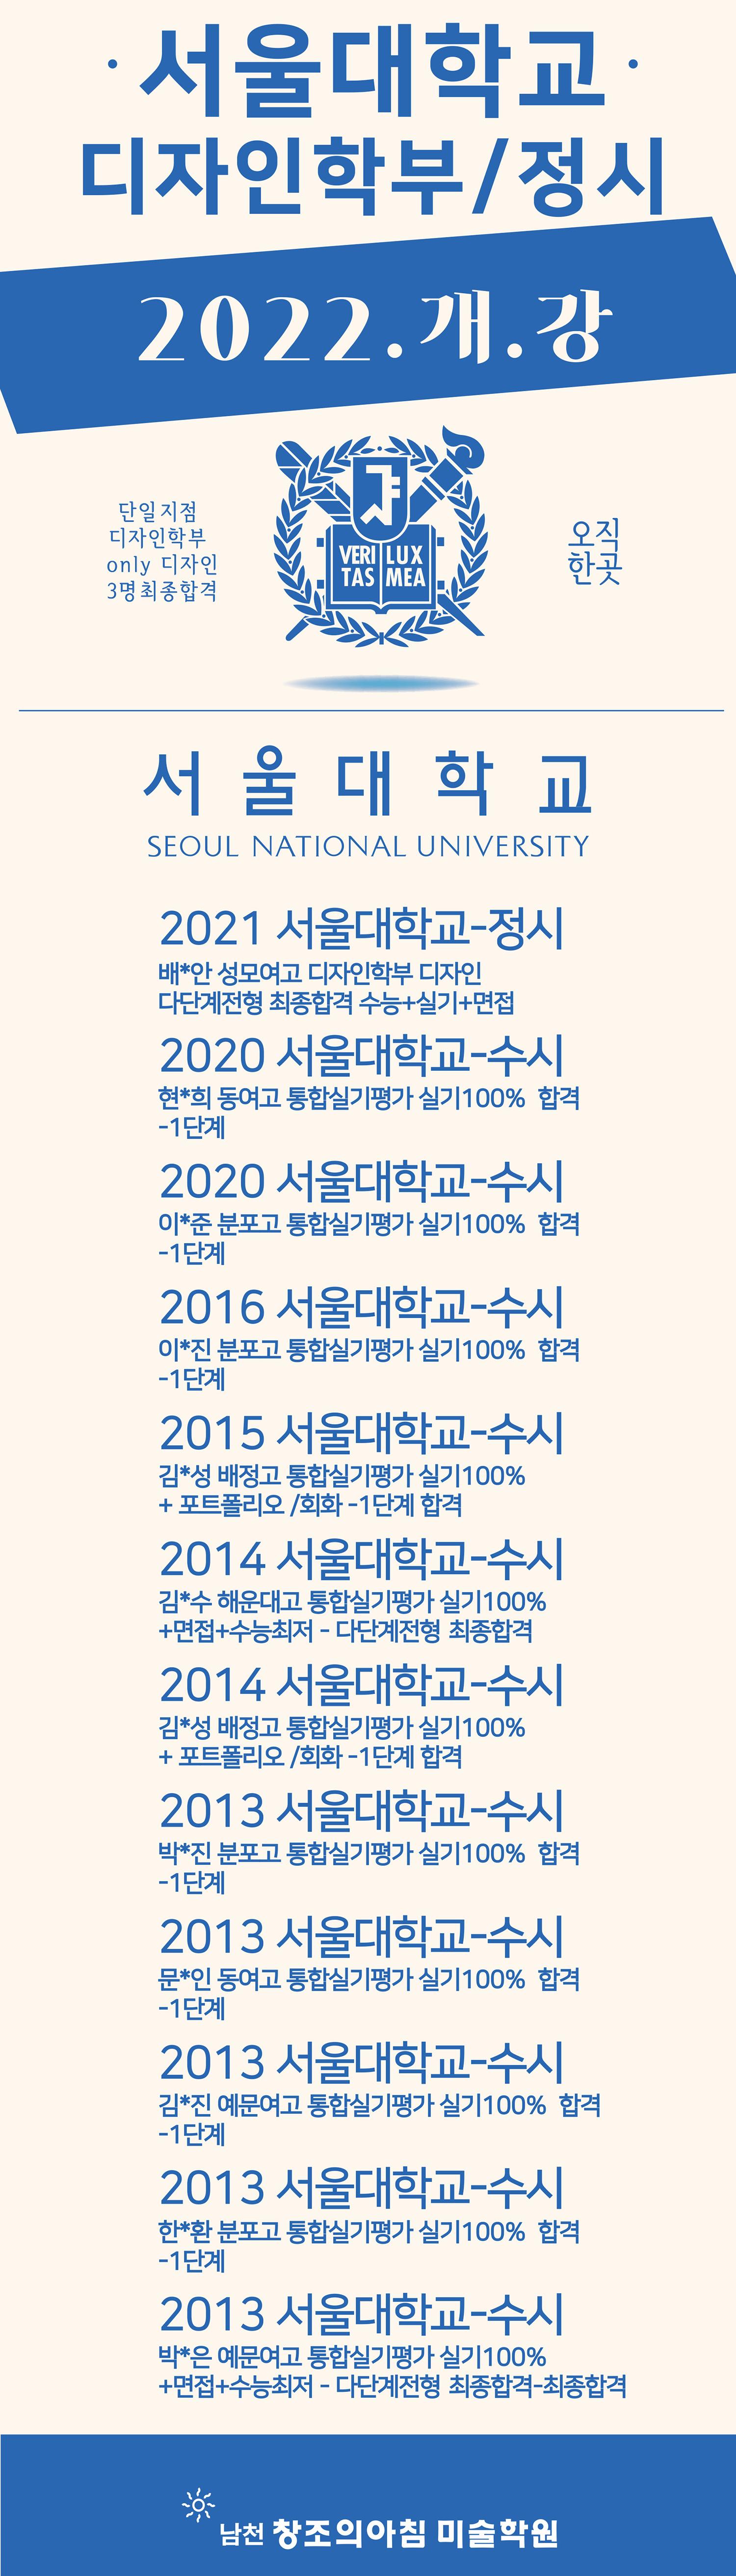 2022 서울대 팝업2